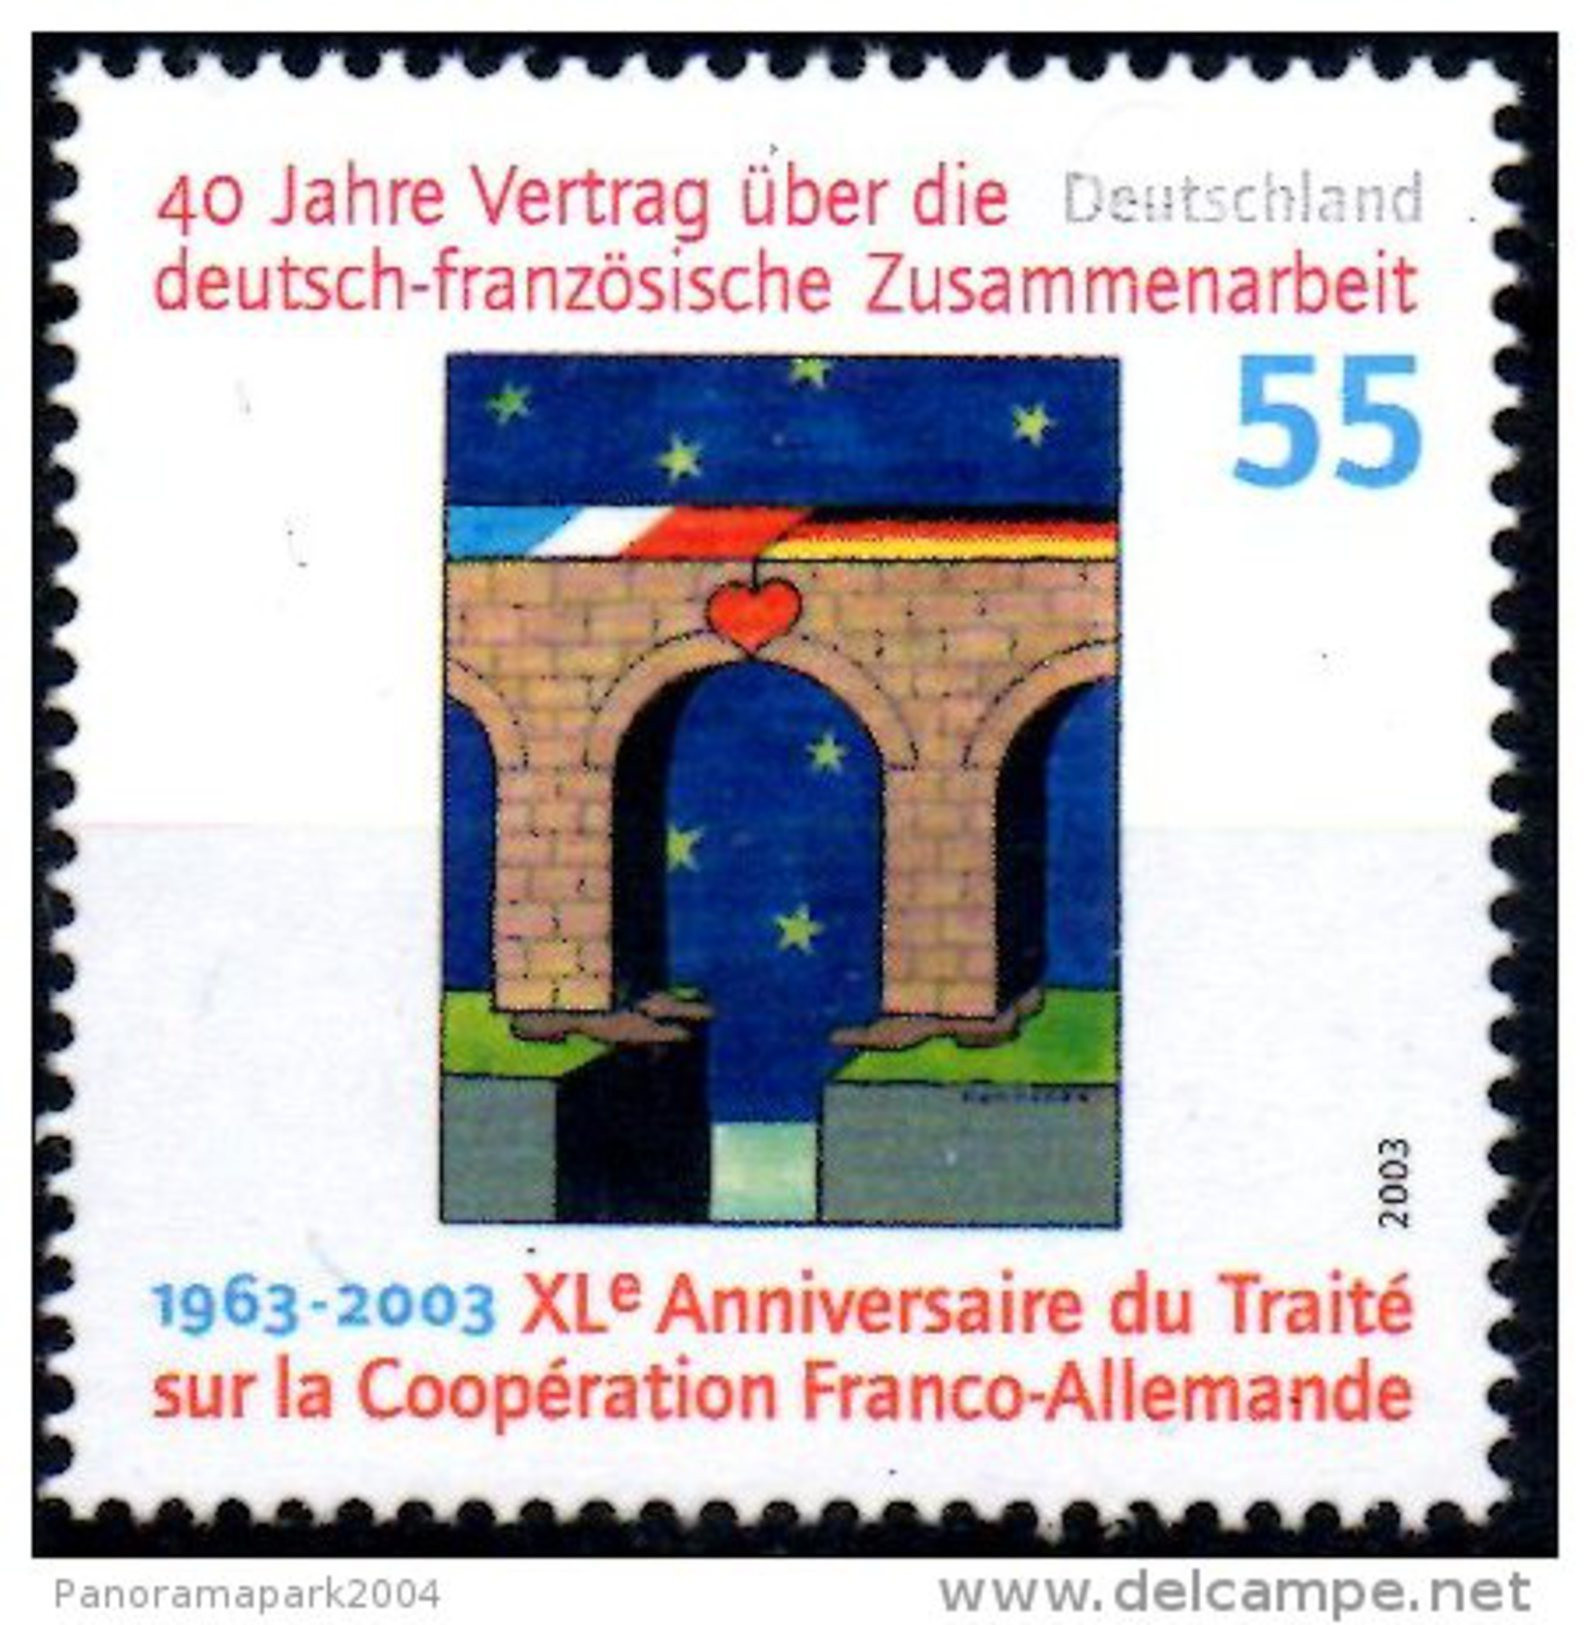 Emission Commune France Allemagne 2003 40e Anniversaire Traité De L'Elysée Coopération Tomi Ungerer Yvert N°2139 - Emissioni Congiunte